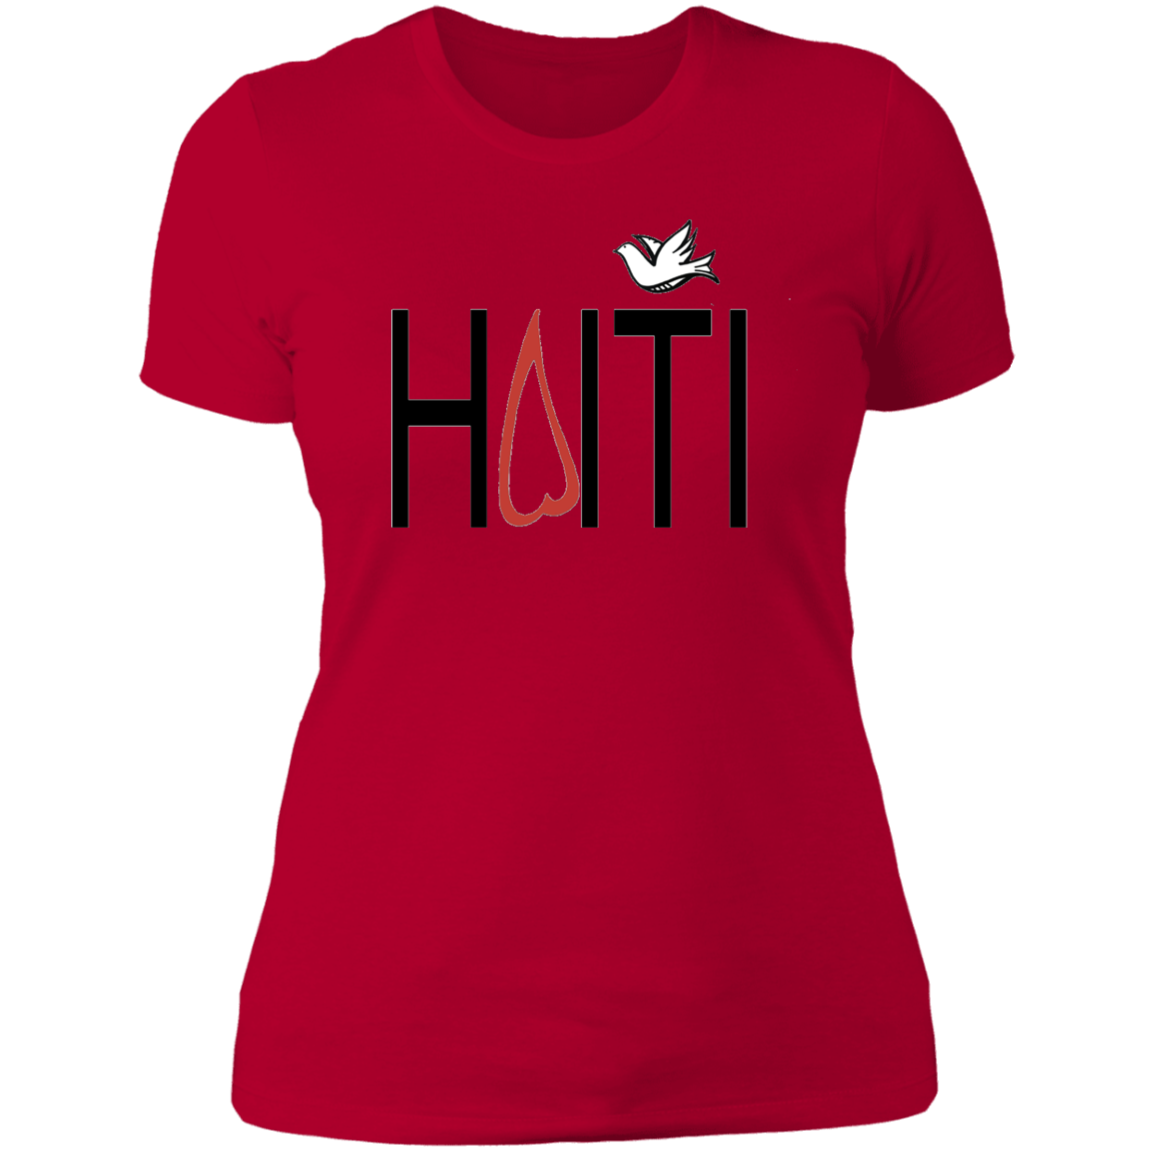 Ladies' Haiti Relief T-Shirt